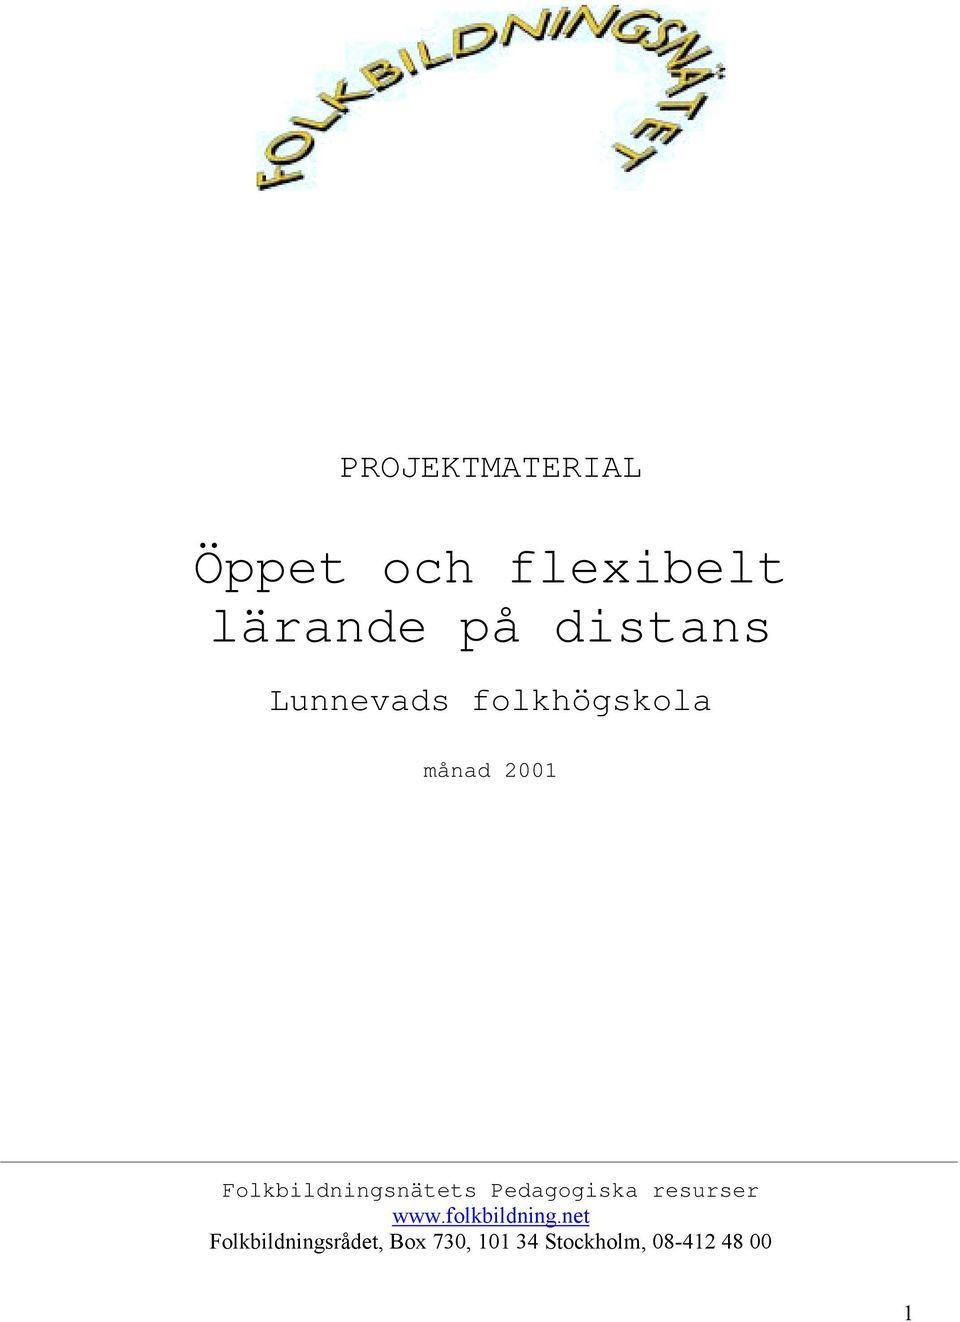 Folkbildningsnätets Pedagogiska resurser www.